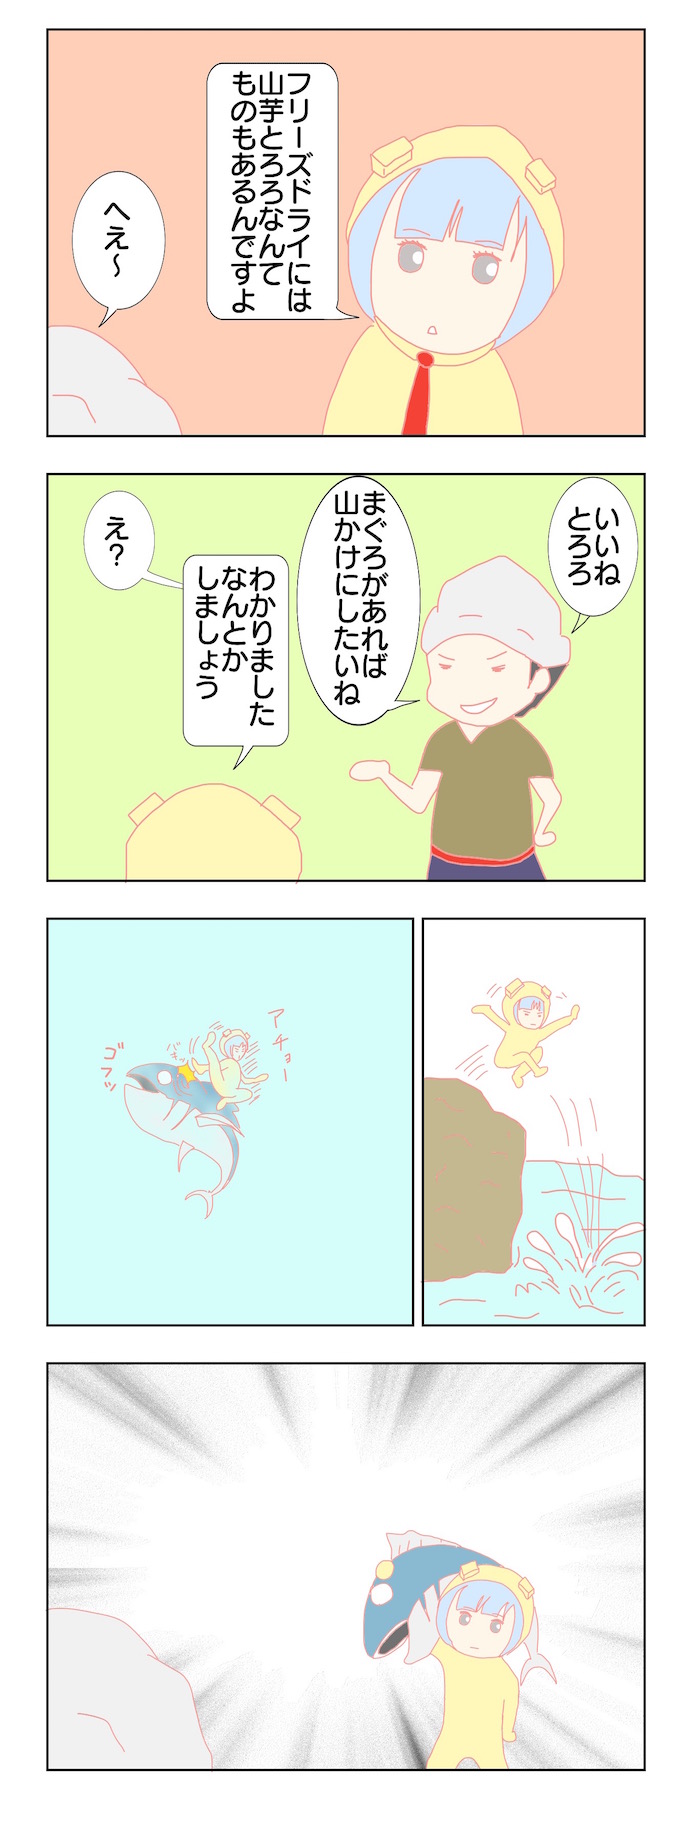 キムケン四コマ漫画